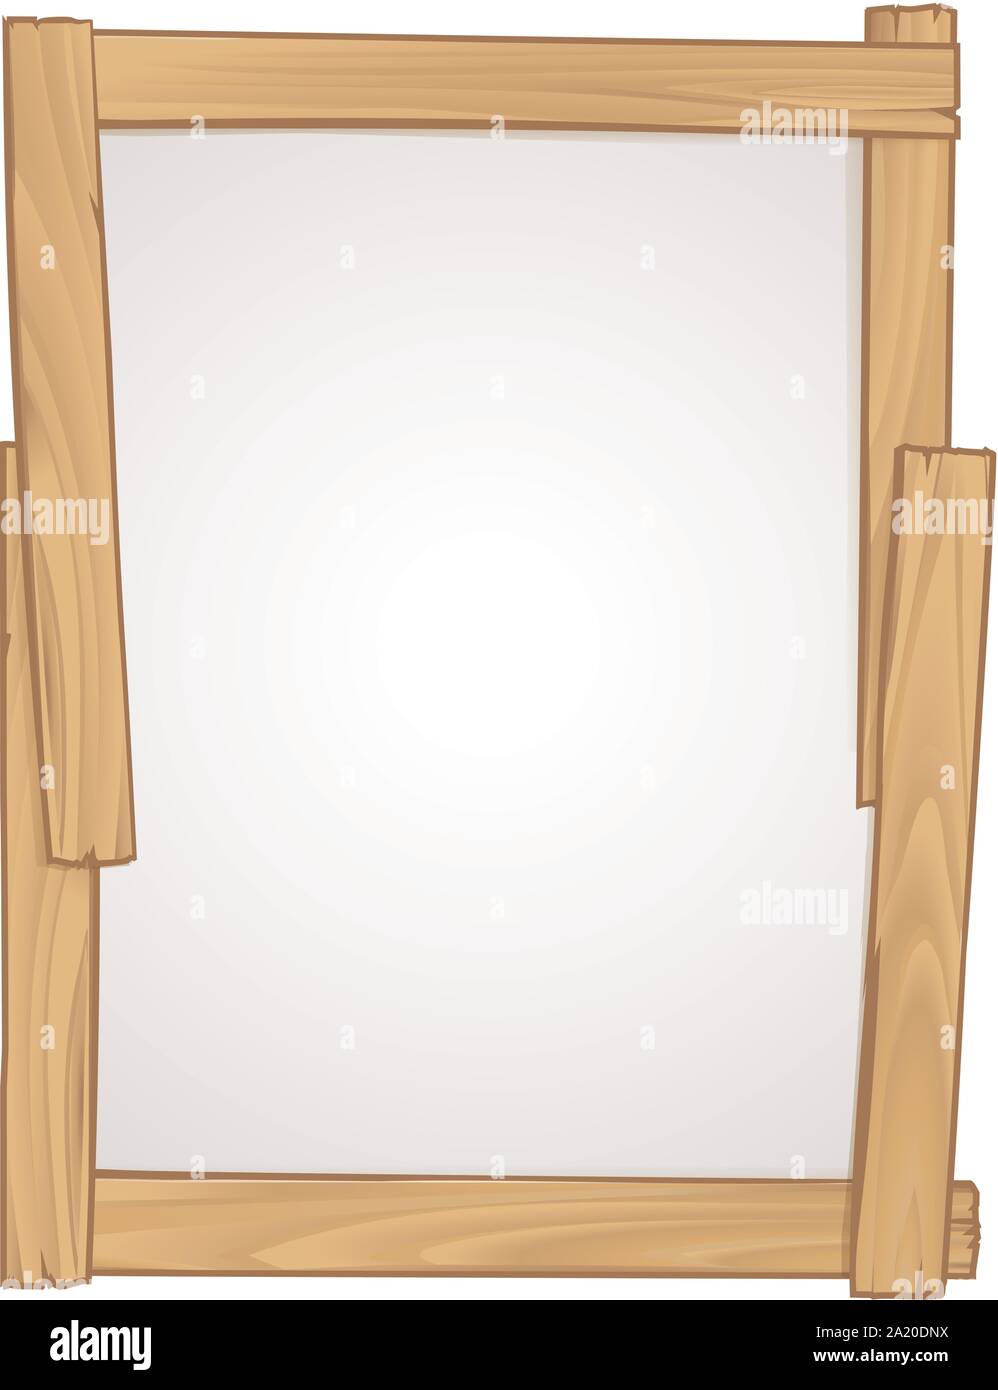 Wood Frame Sign Background Design Element Stock Vector